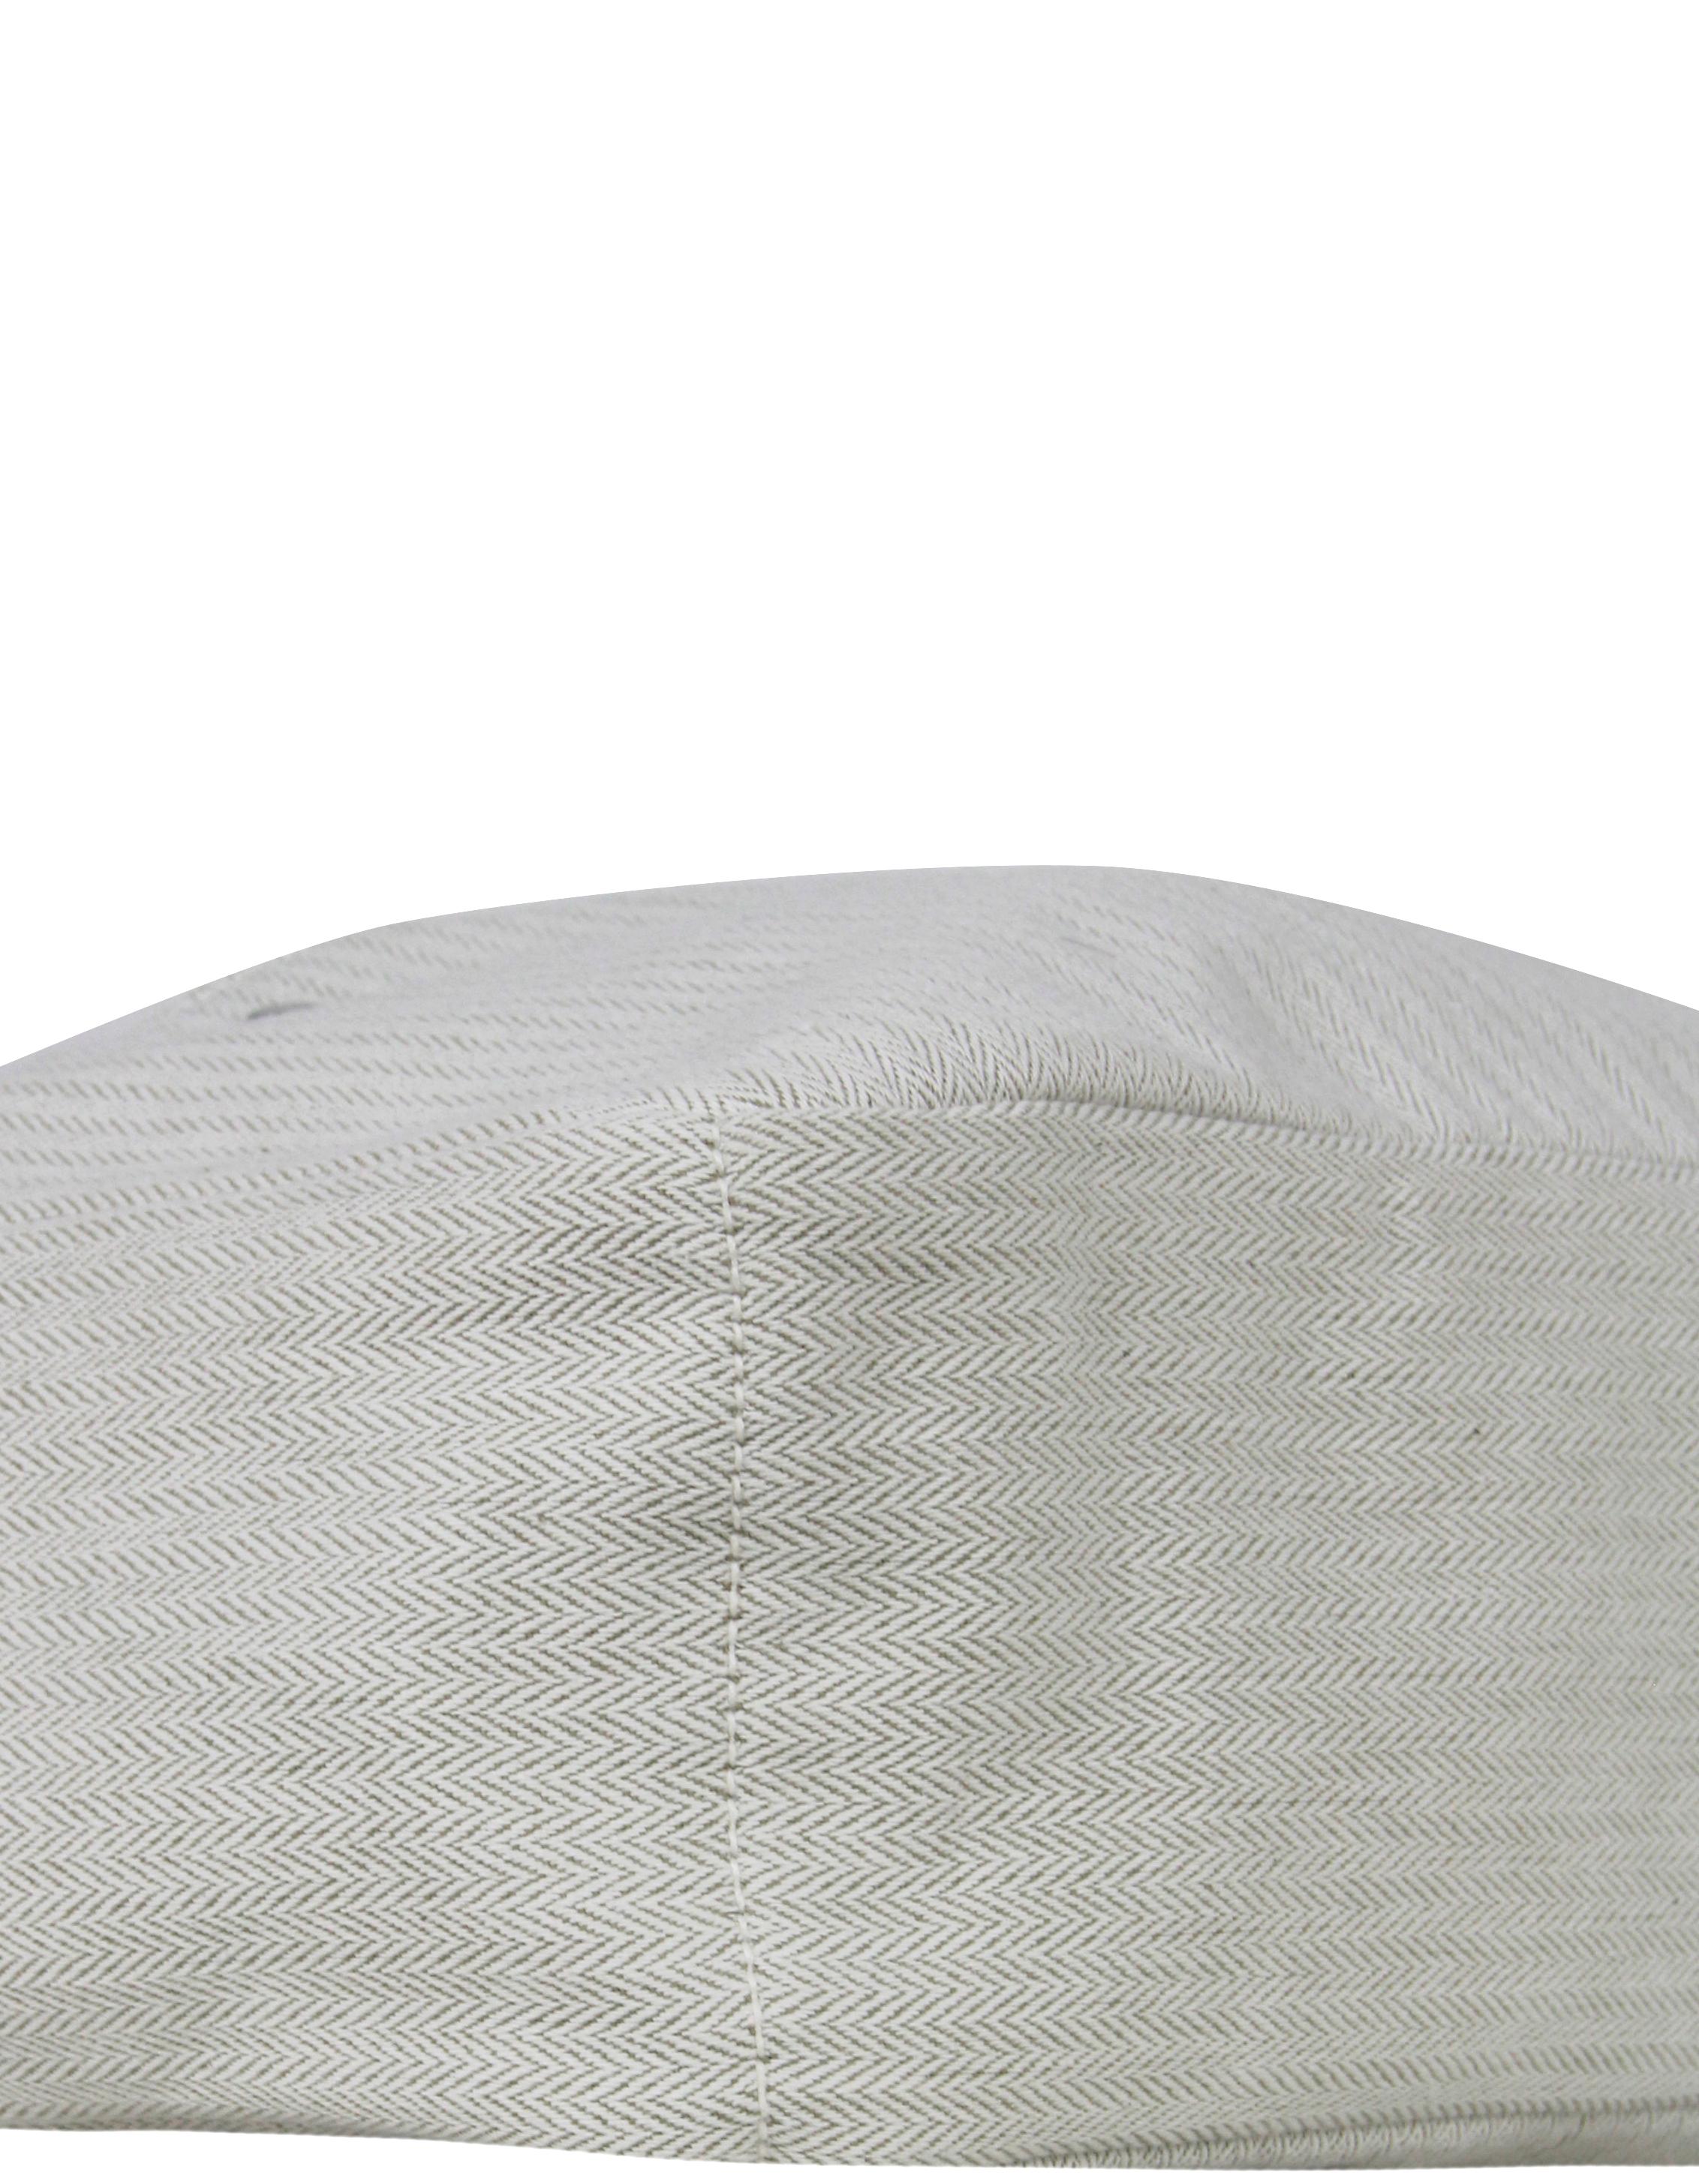 Gris Hermès - Sac Barenia Fourbi 25 MM en toile fauve naturelle, inséré dans le sac en vente